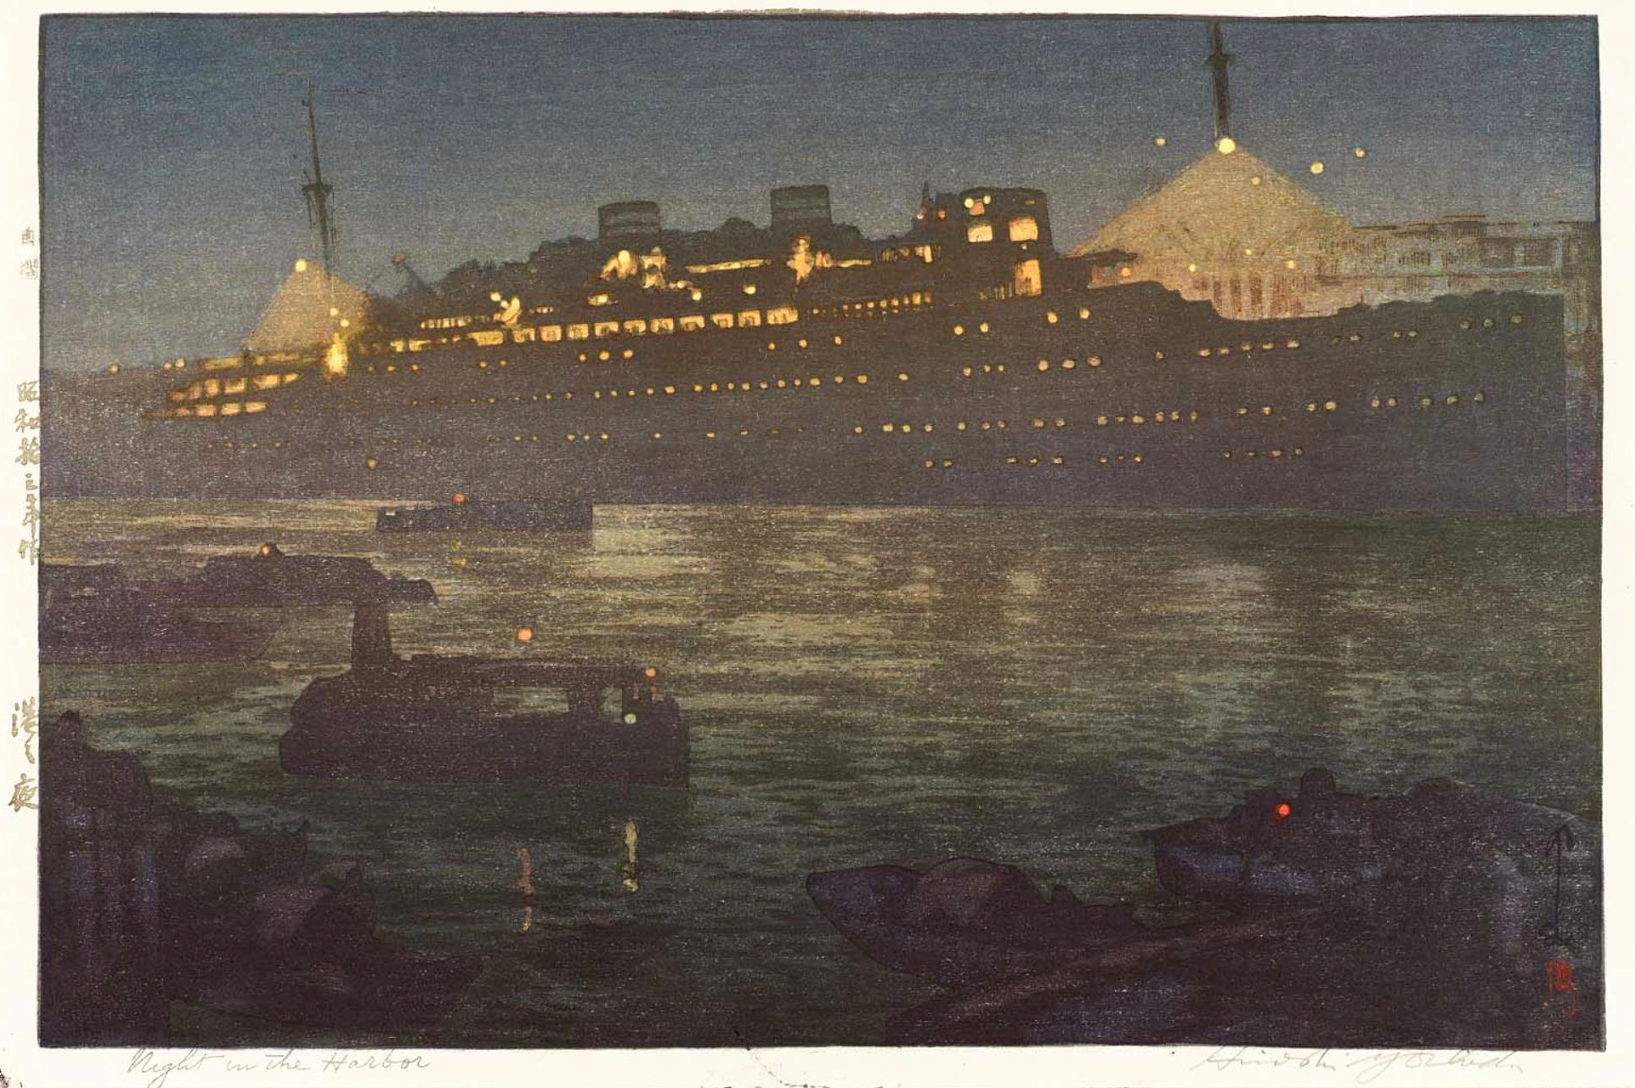 Hiroshi Yoshida “Night in the Harbor” 1938 woodblock print